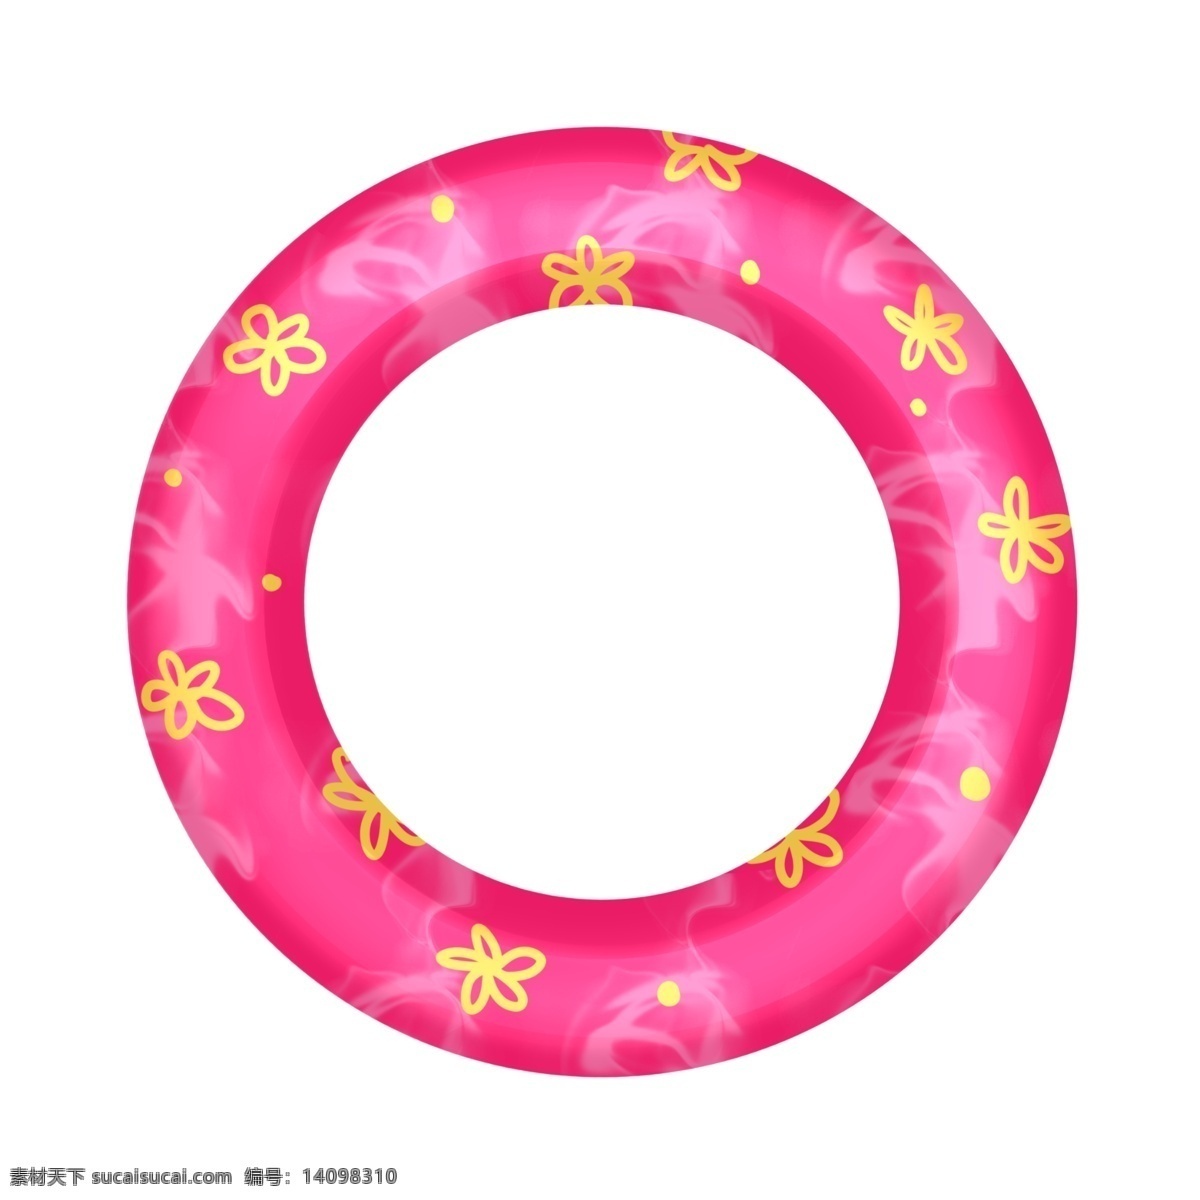 粉色泳圈 泳圈 卡通 可爱 简洁 优雅